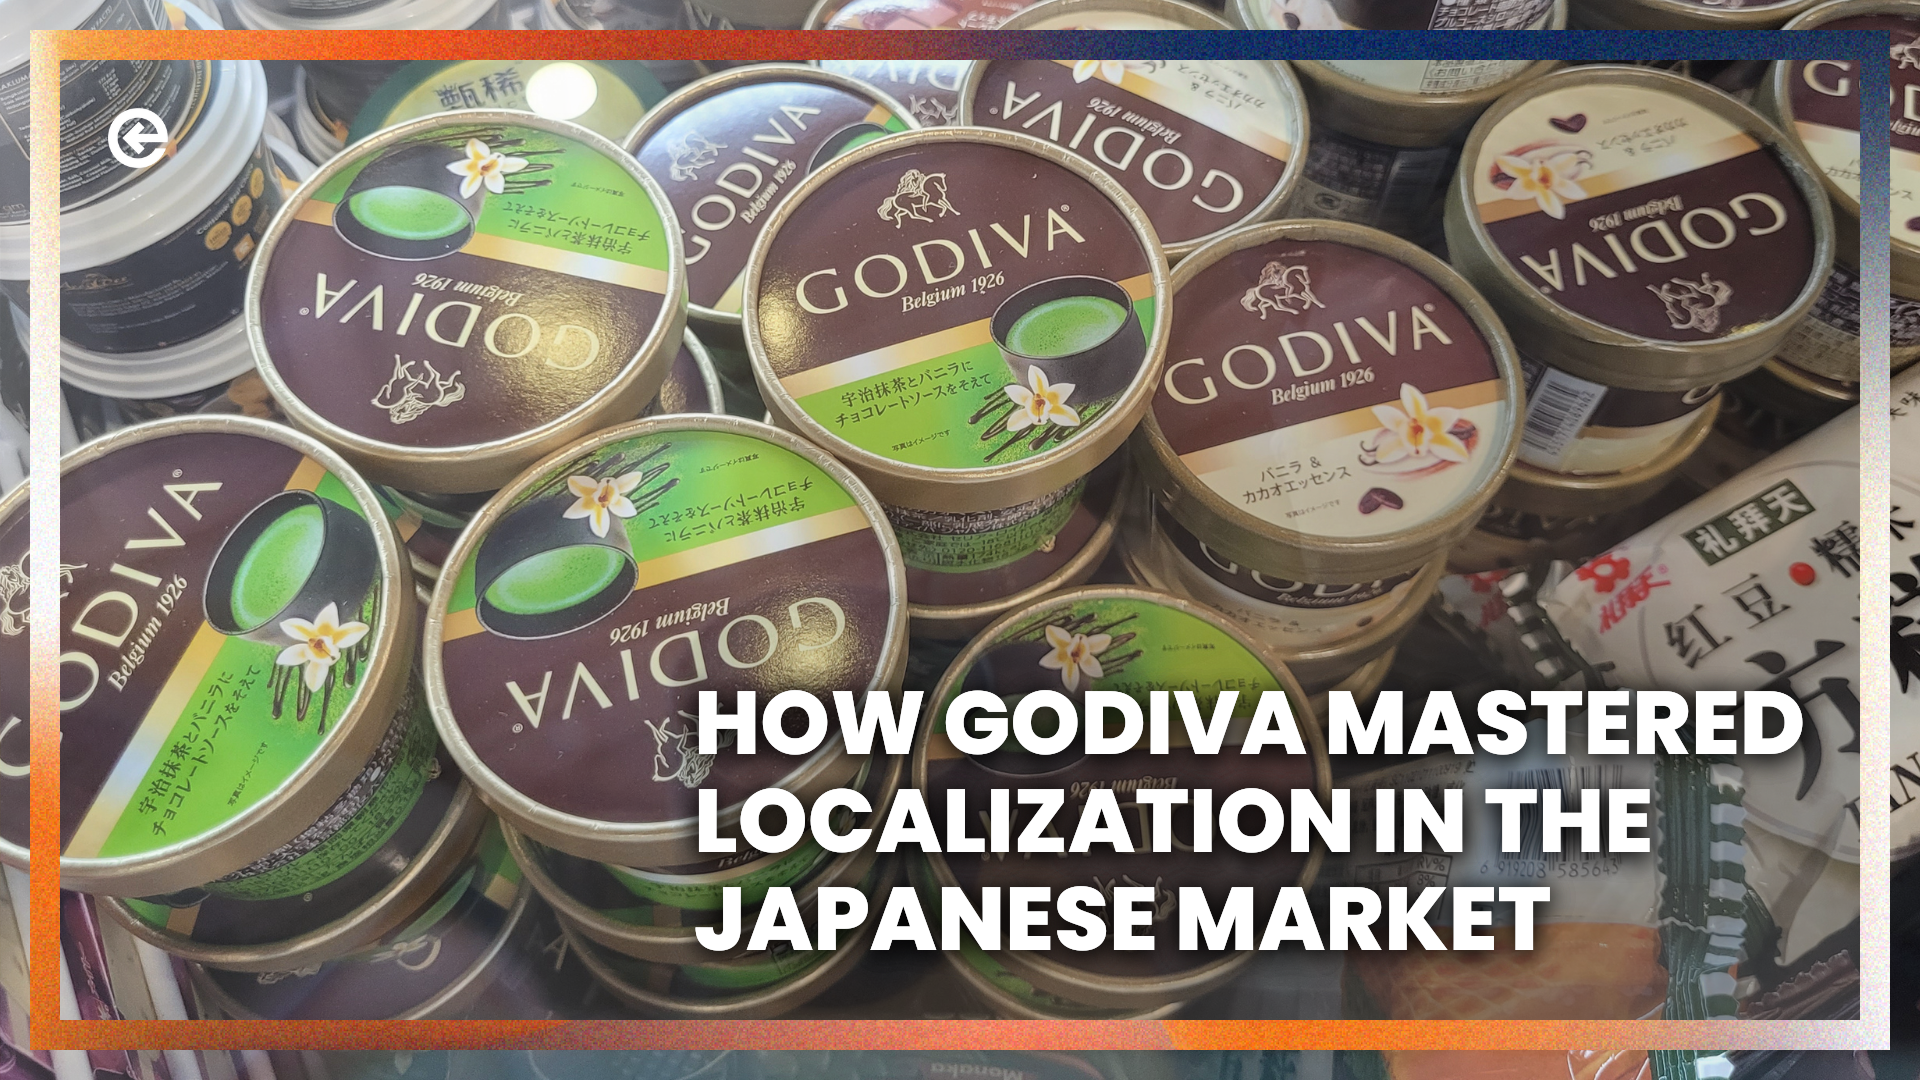 गोडिवा ने जापानी बाजार में स्थानीयकरण में कैसे महारत हासिल की?